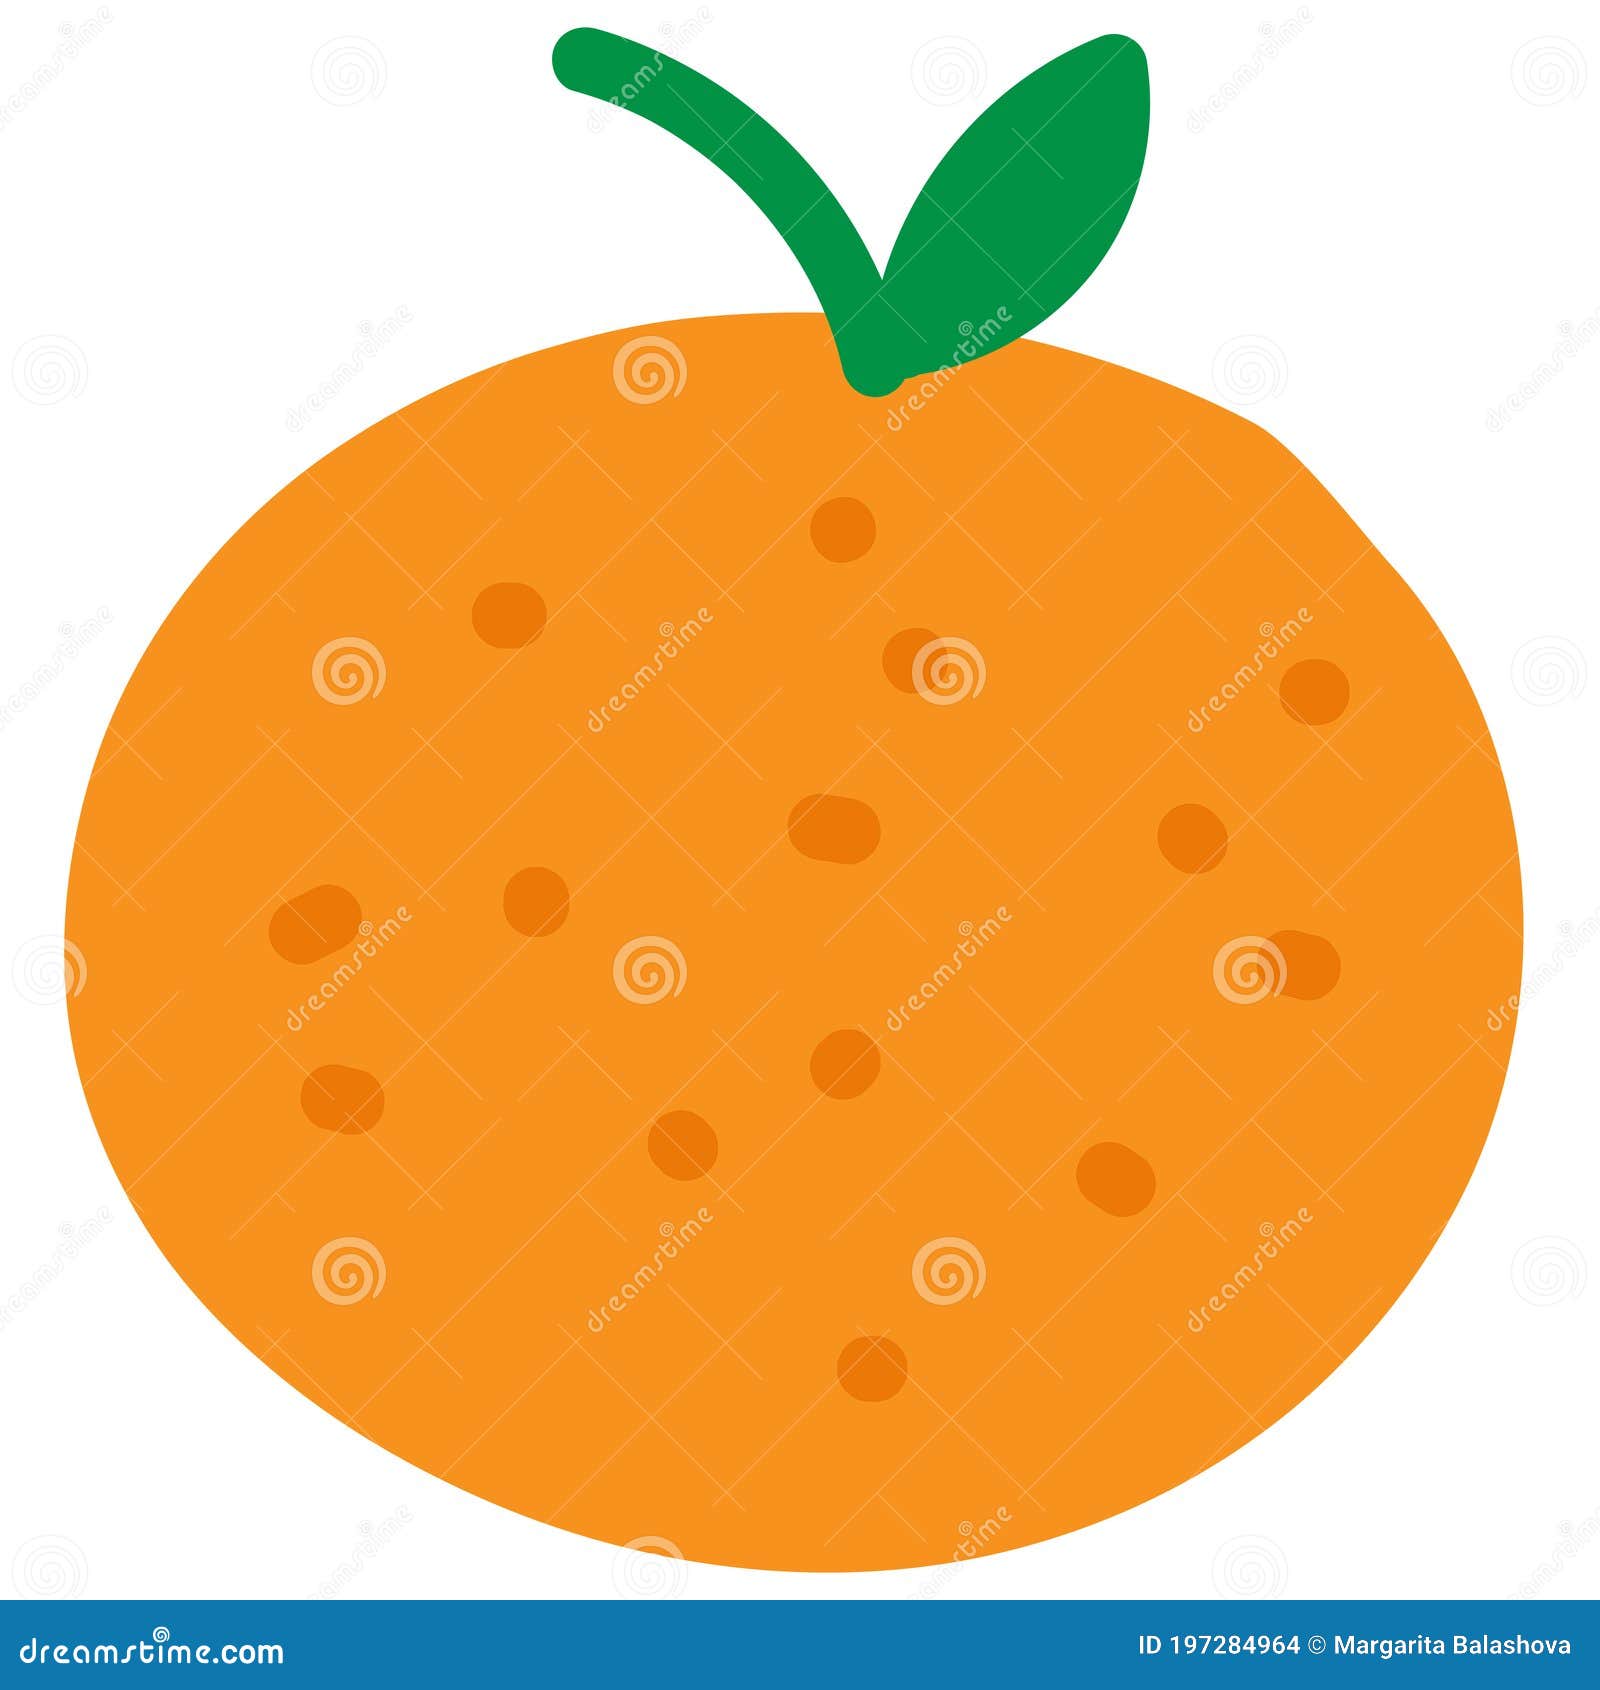 Simple coloring page cartoon orange book Vector Image